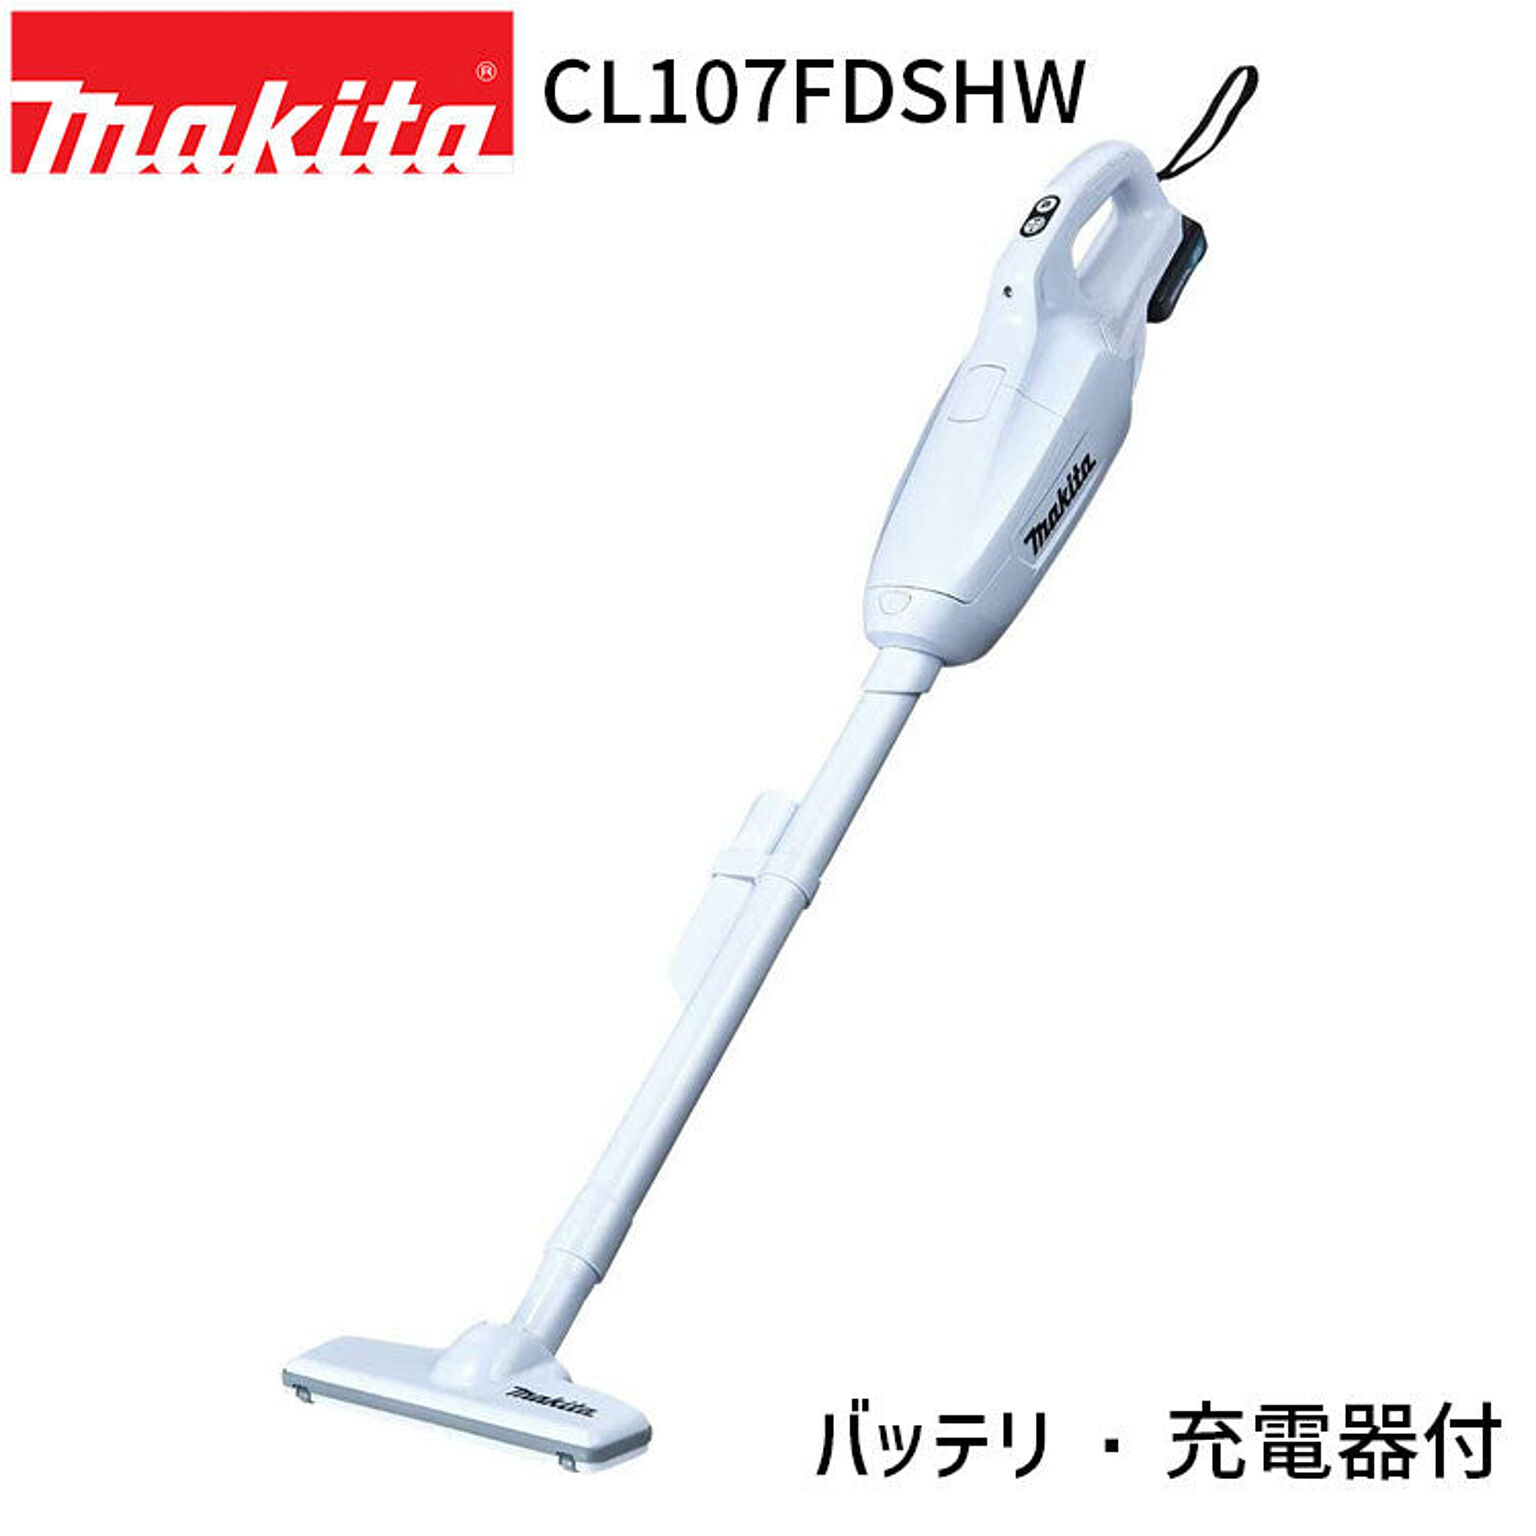 マキタ 充電式 クリーナー CL107FDSHW 10.8V 1.5Ah 紙パック式 掃除機 ワンタッチスイッチ